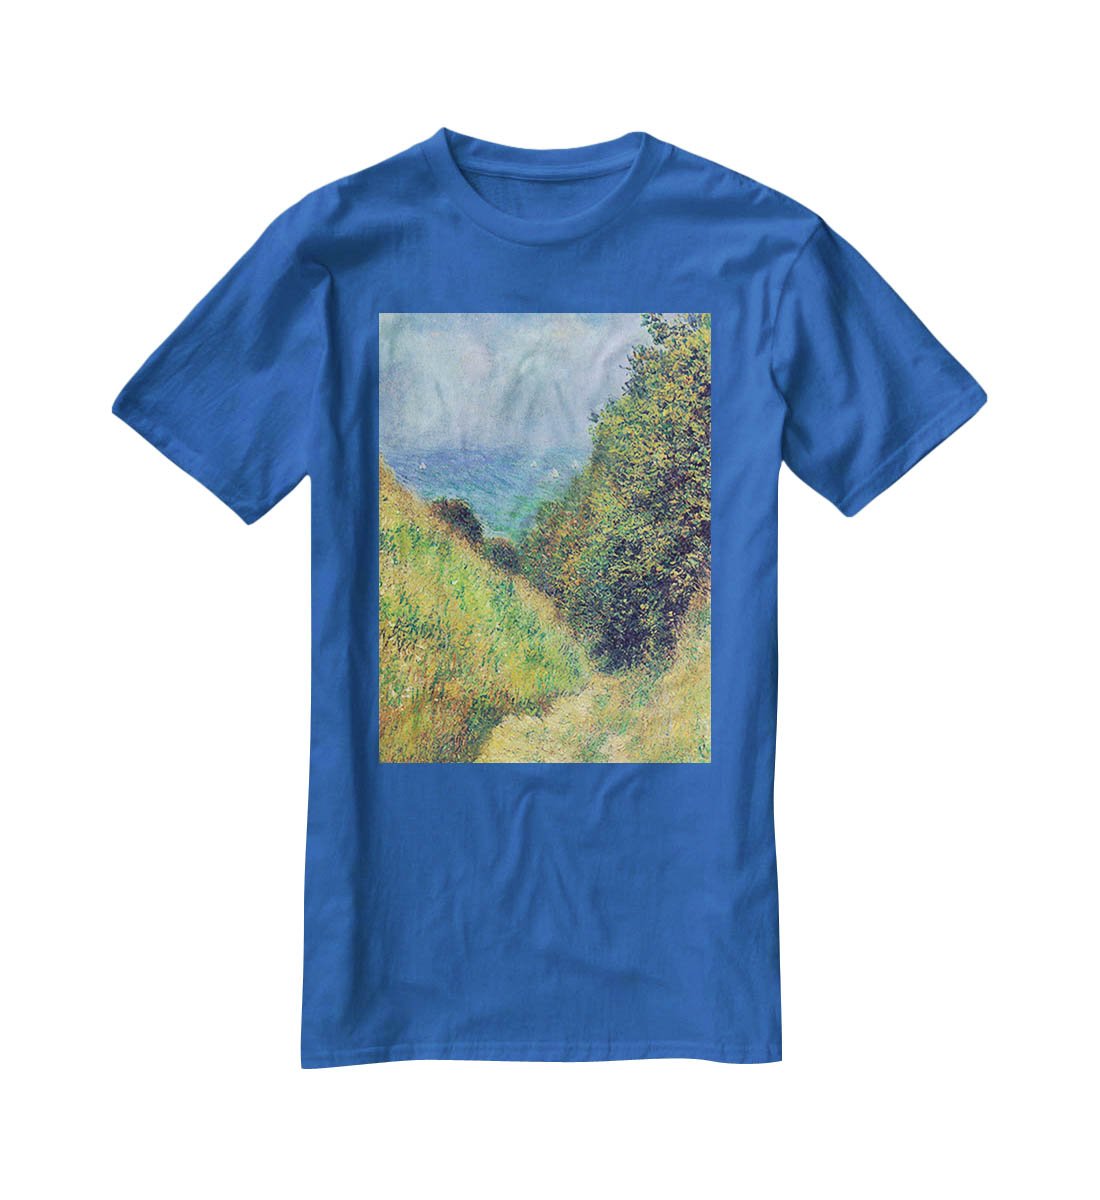 Pourville 2 by Monet T-Shirt - Canvas Art Rocks - 2